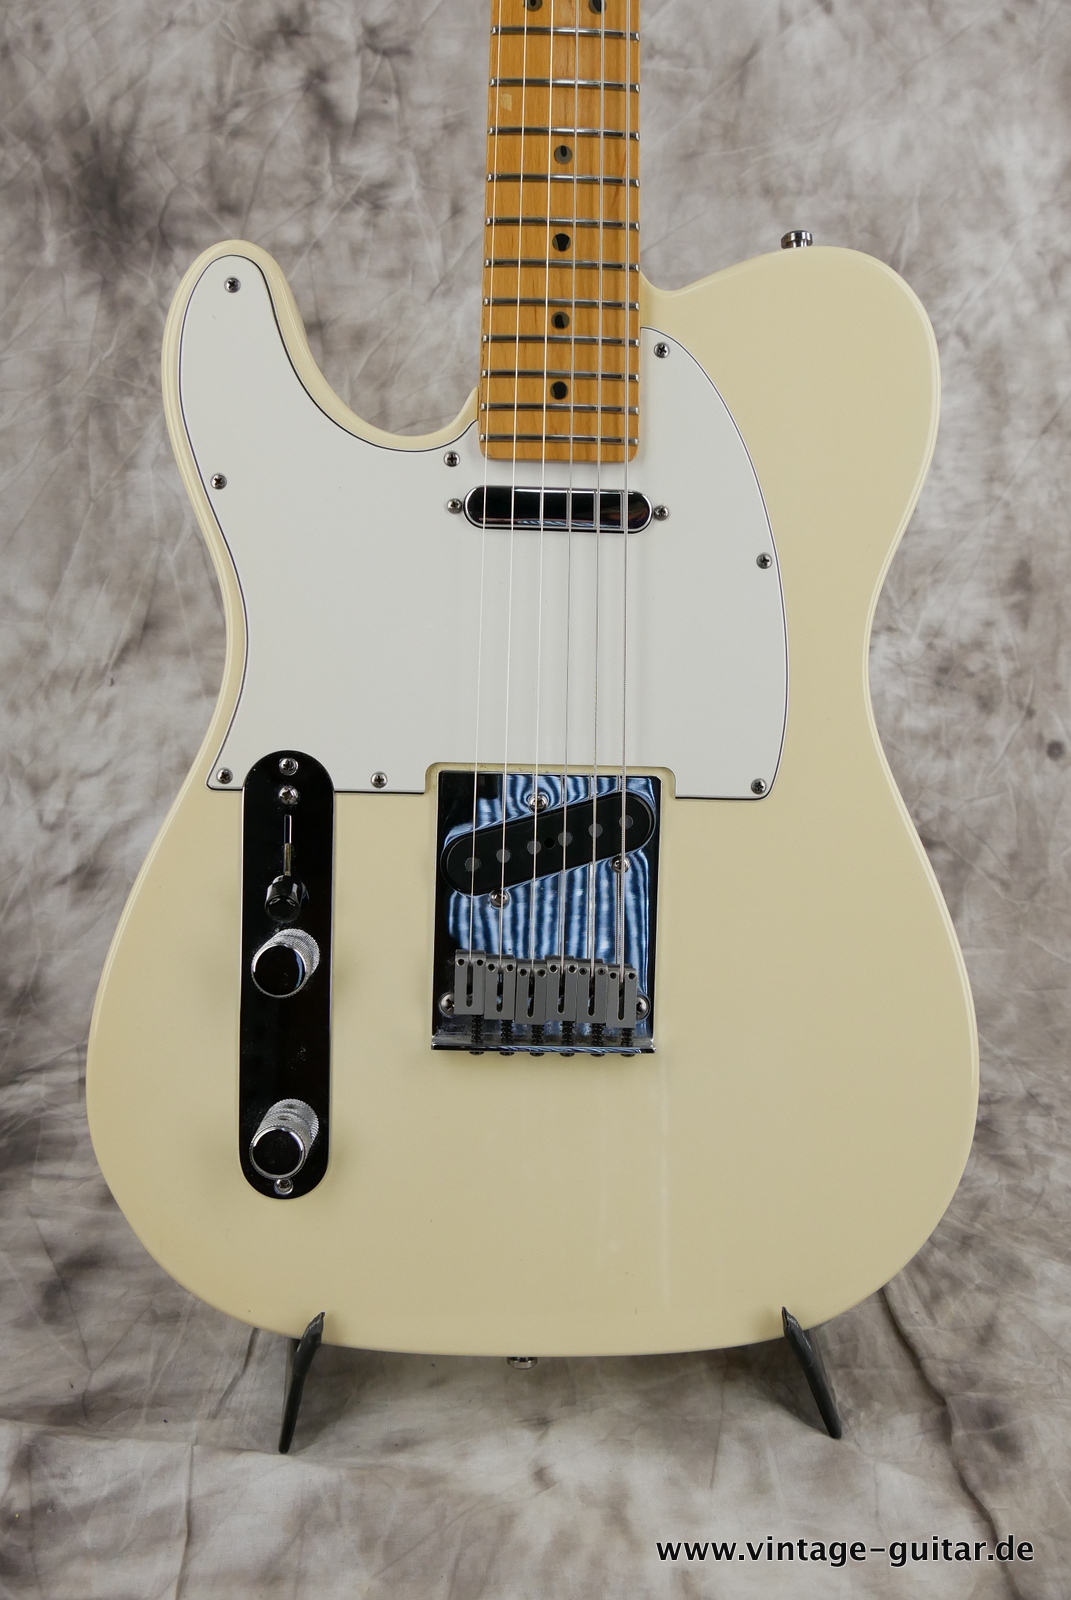 Fender_Telecaster_Standard_1999_olypic_white_left_handed-007.JPG